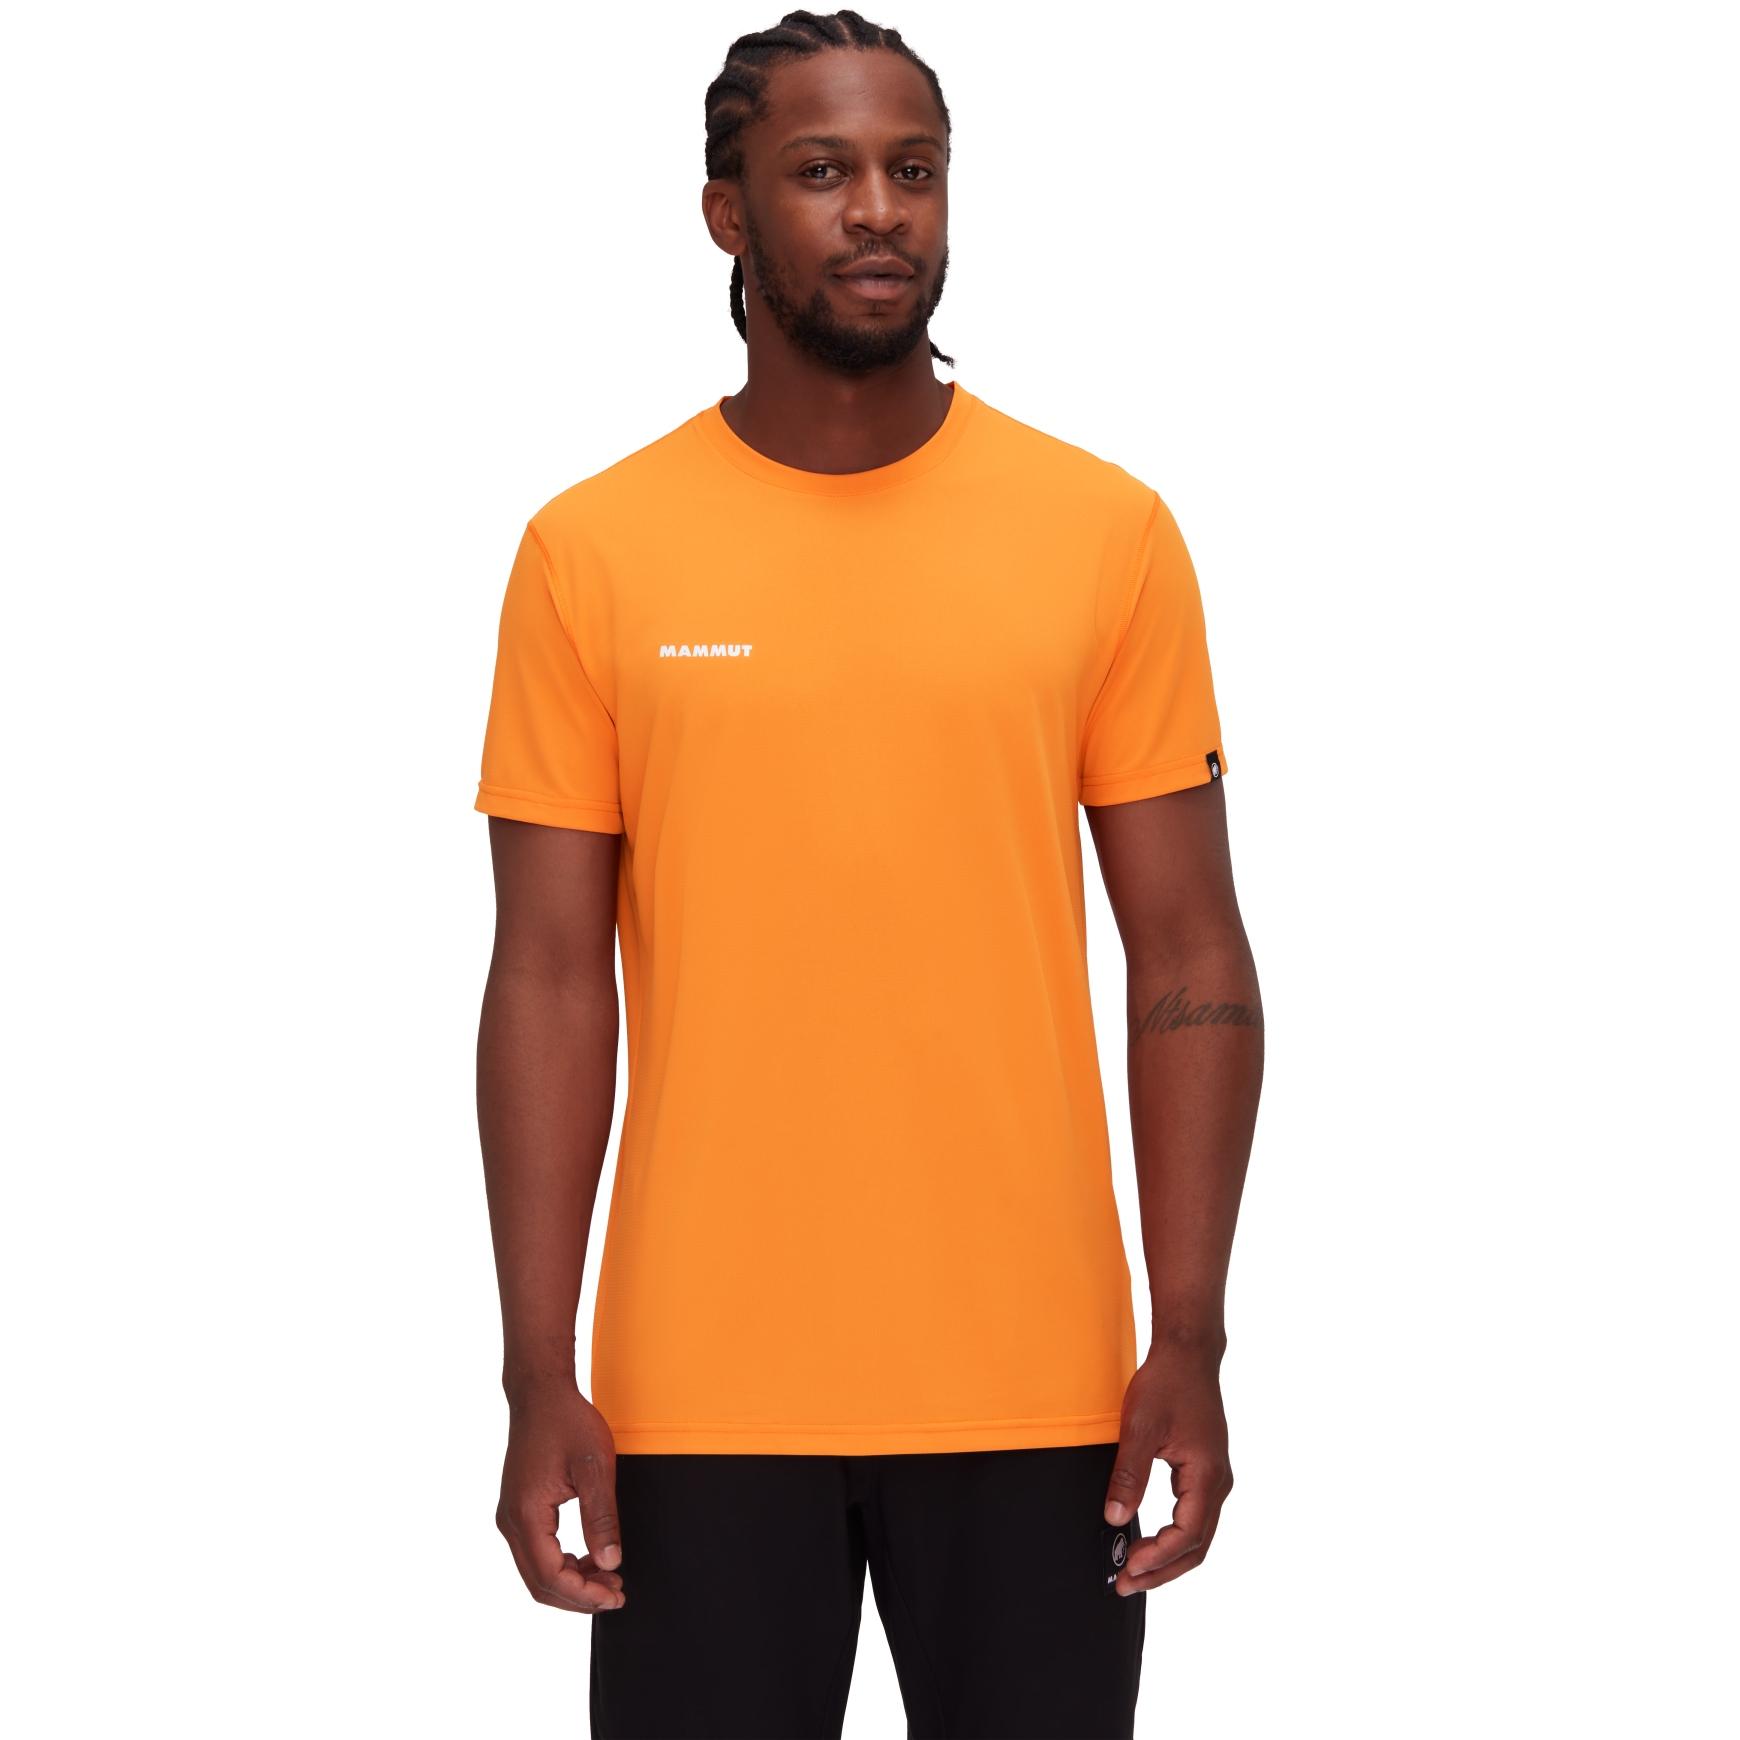 Produktbild von Mammut Massone Sport T-Shirt Herren - dark tangerine